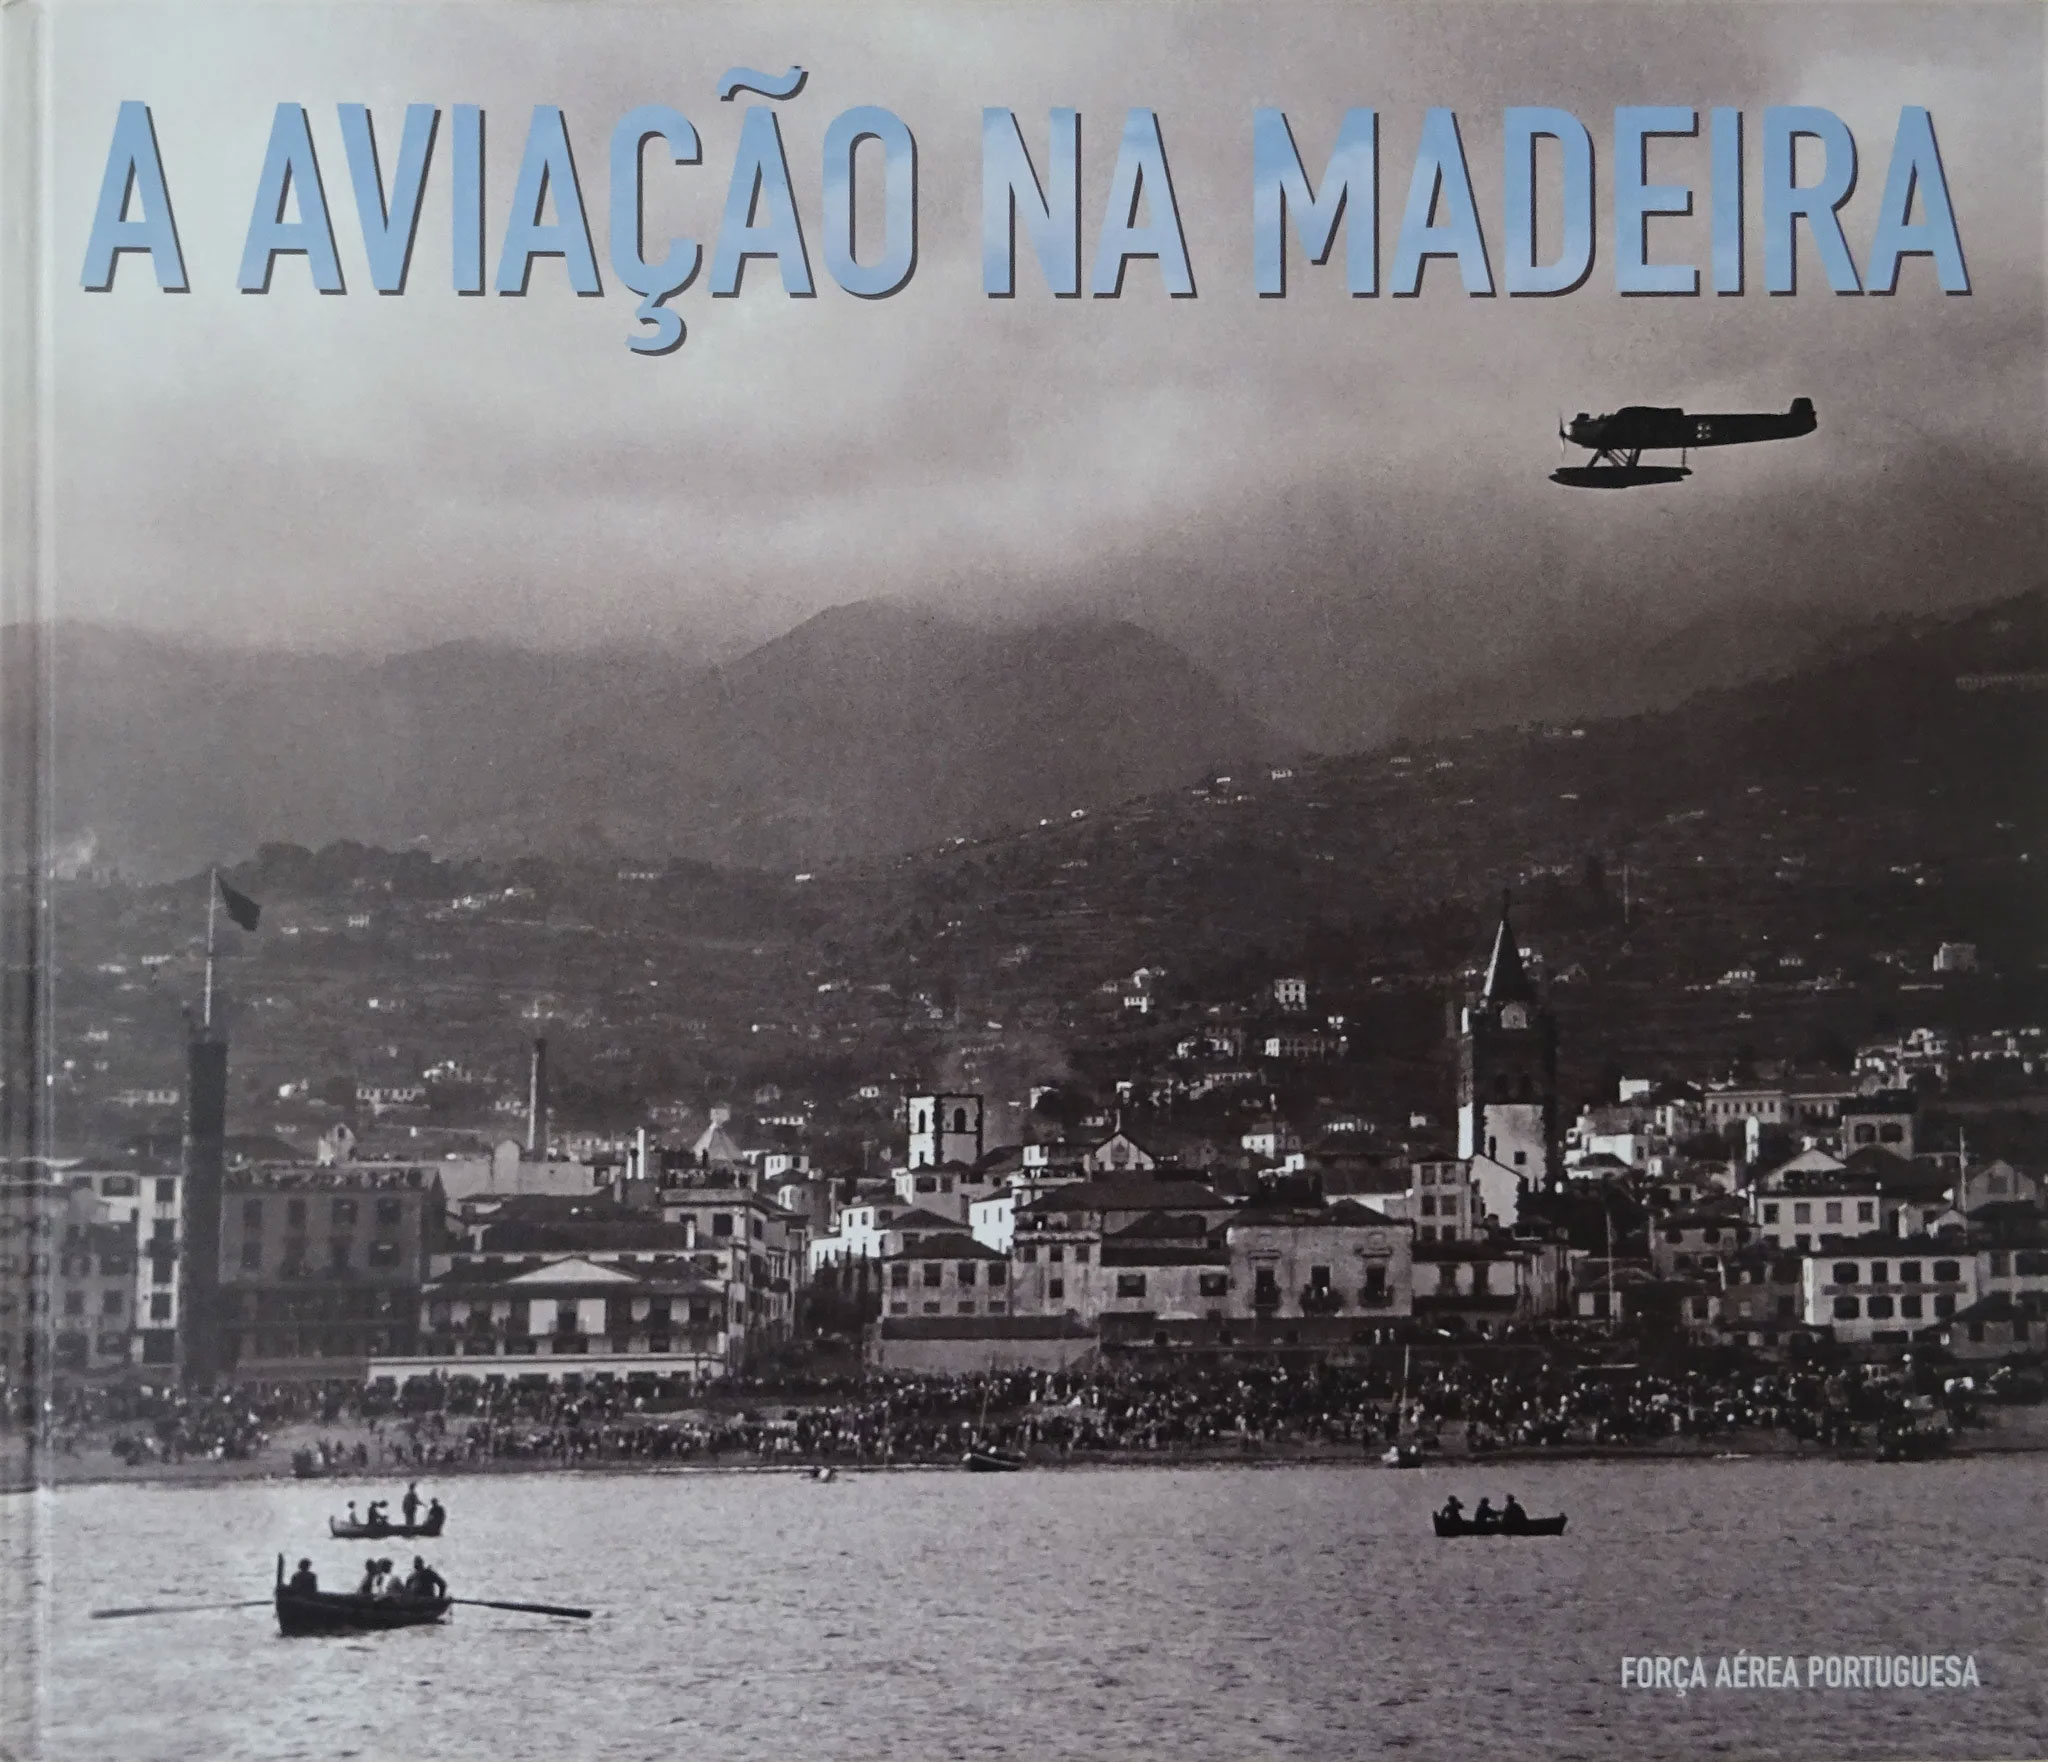 A Aviao na Madeira